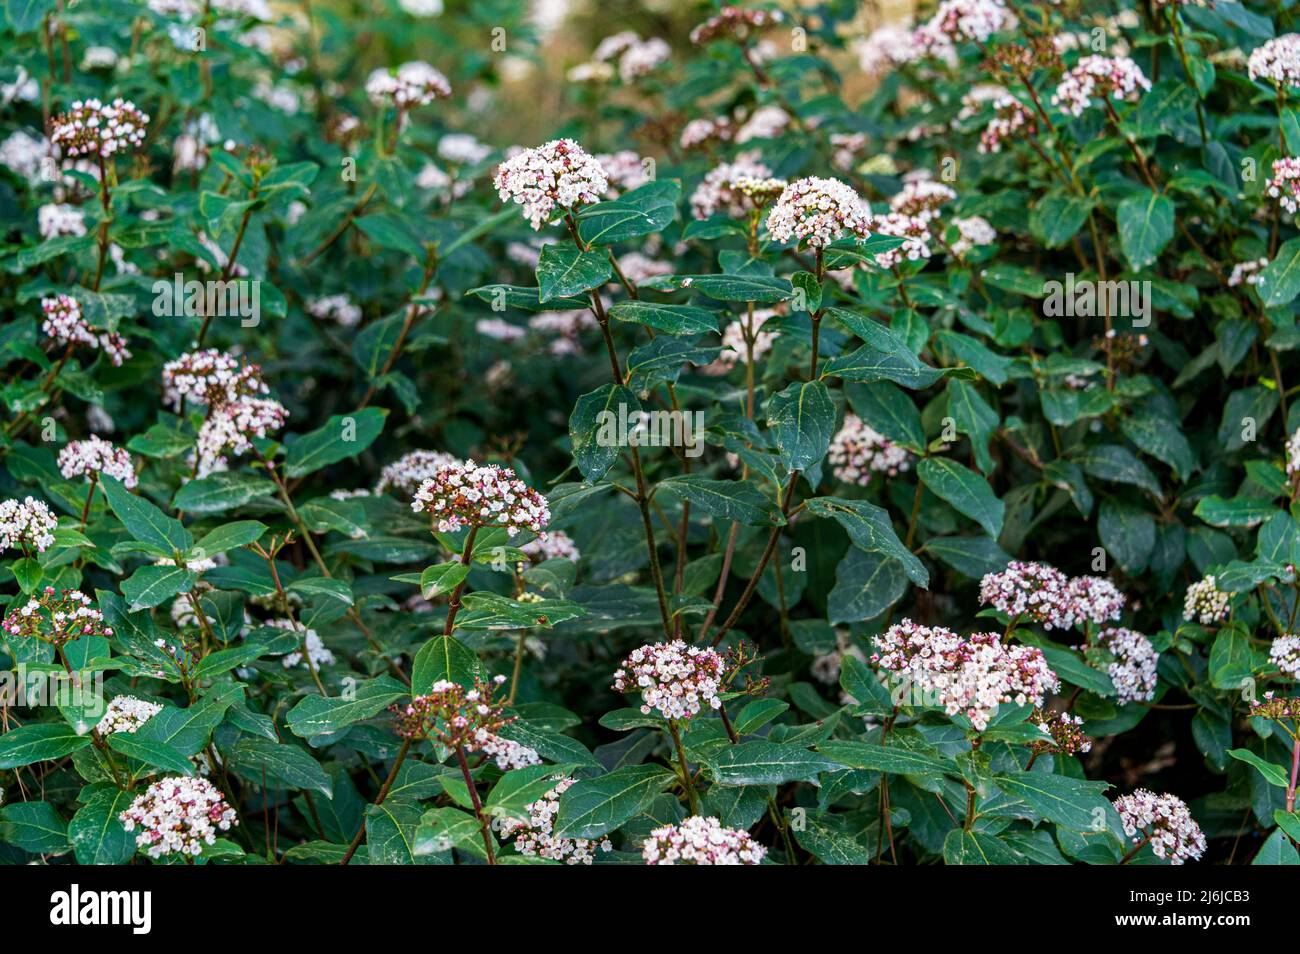 Viburnum tinus purpureum, Viburnum tinus purpureum, Laurustinus Purpureum, Viburnaceae. White Viburnum flowers in spring. Stock Photo